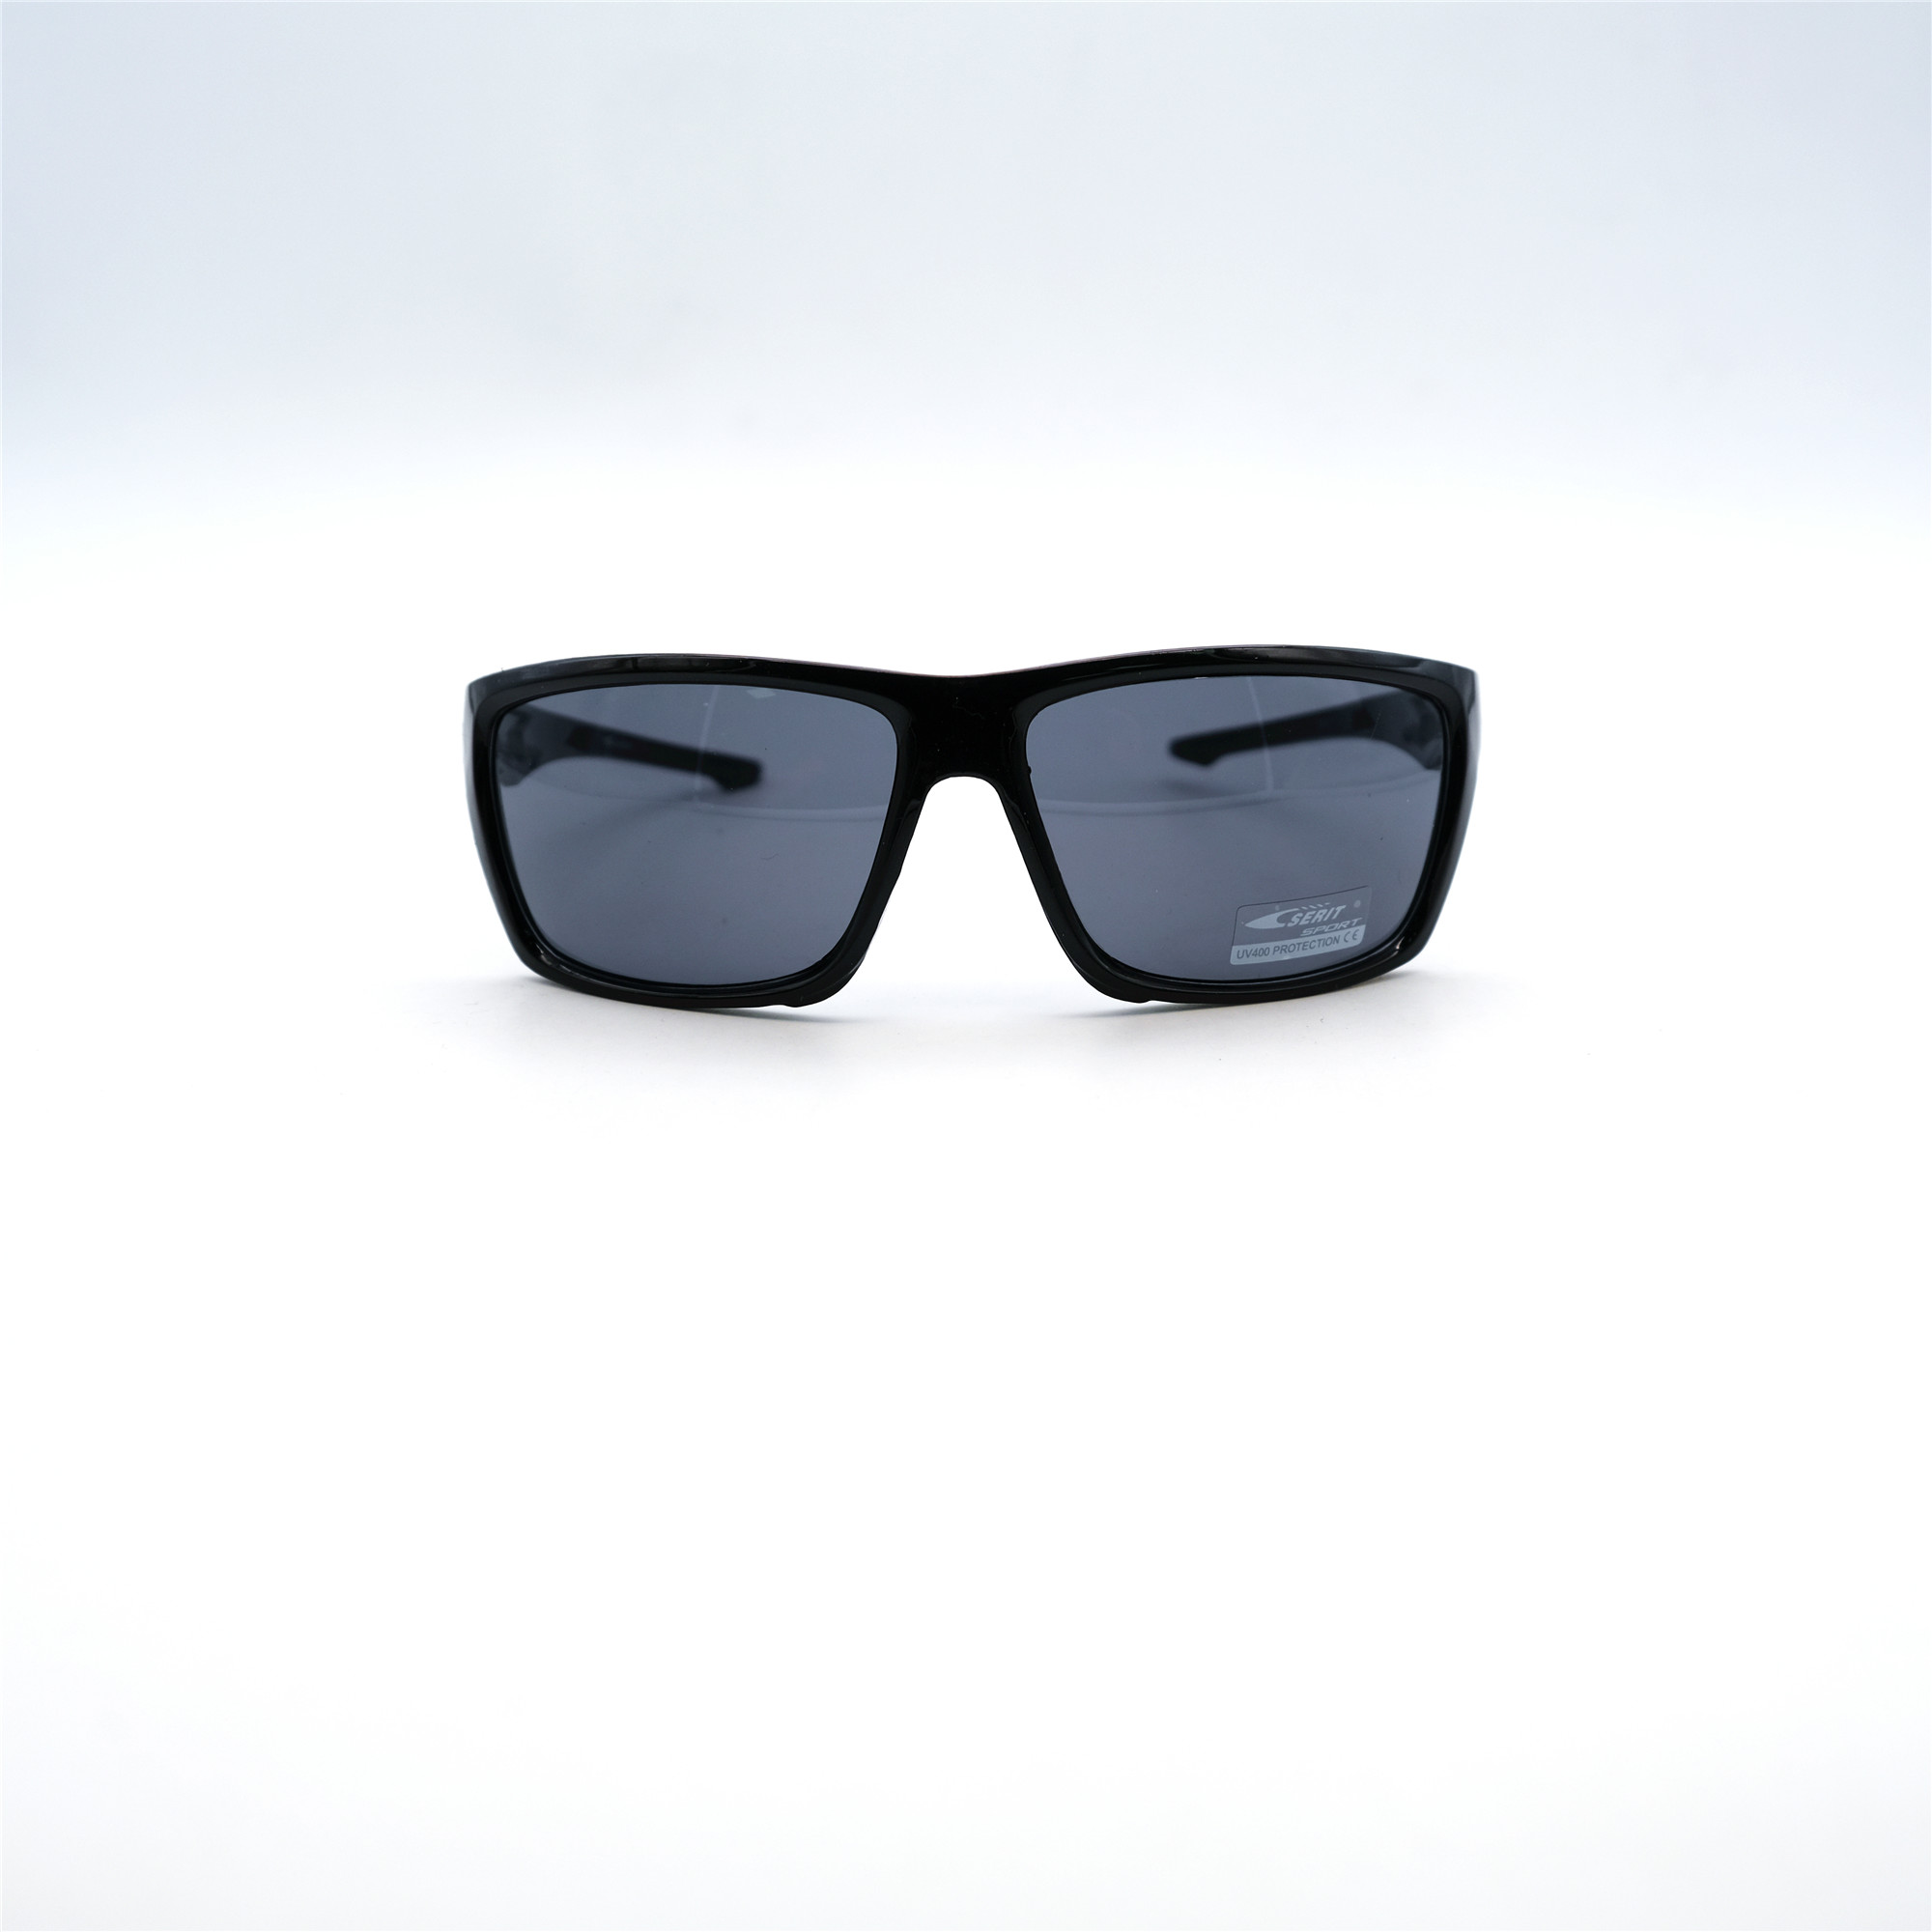  Солнцезащитные очки картинка Мужские Serit  Спорт S317-C1 